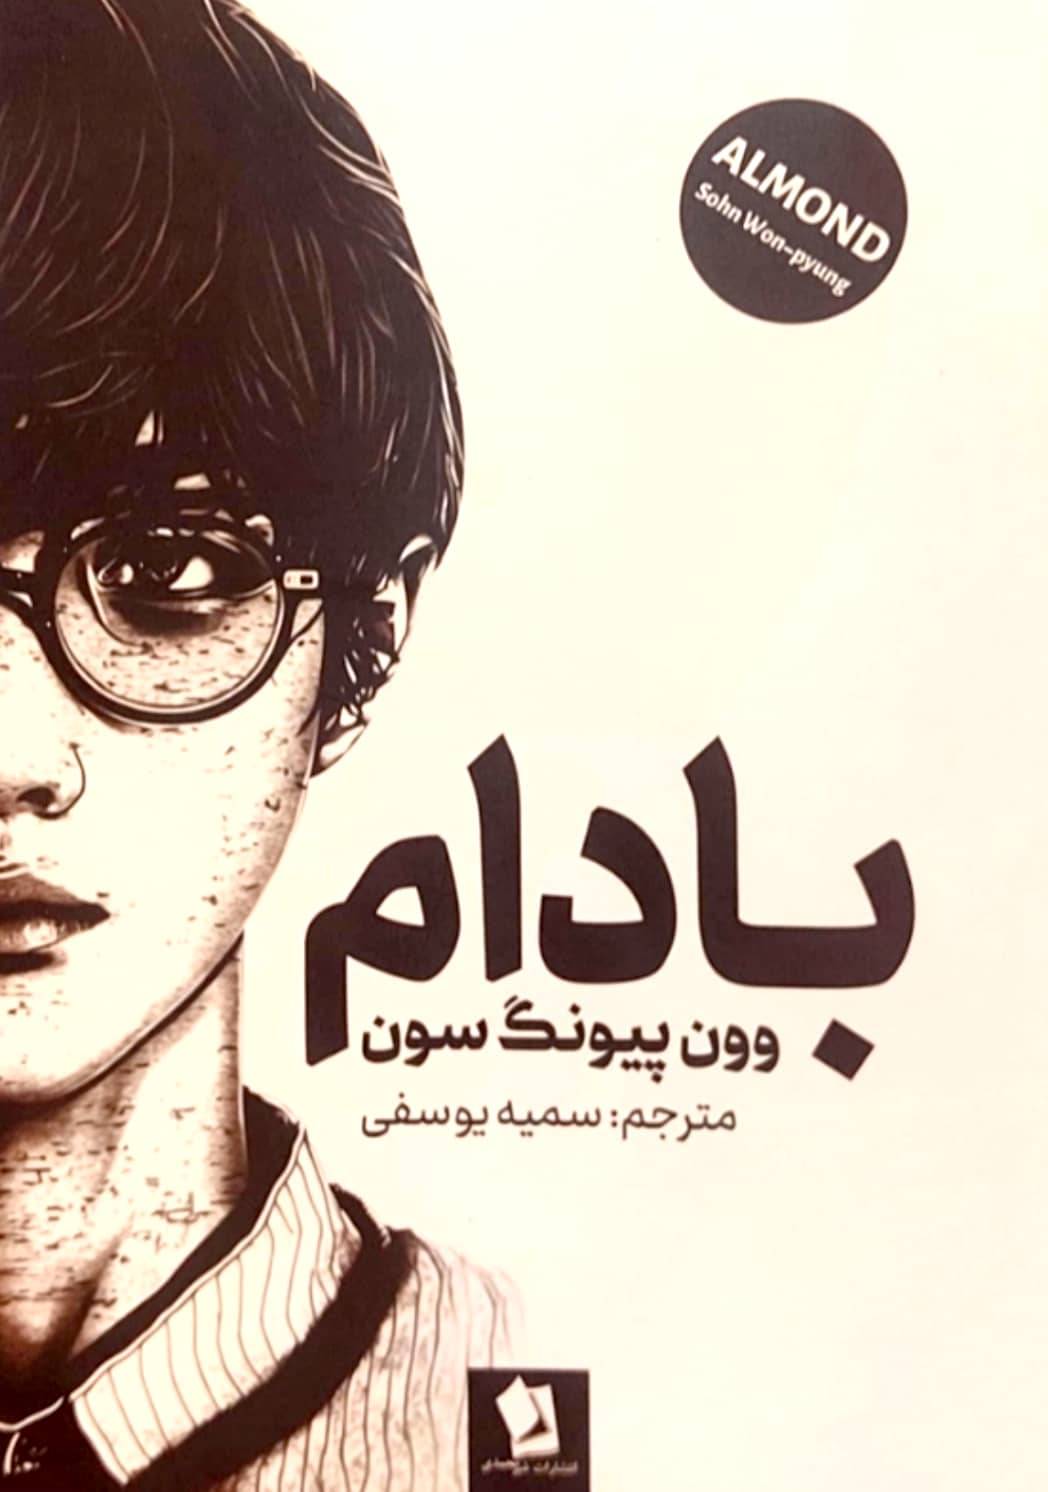 کتاب بادام اثر وون پیونگ سون انتشارات شیرمحمدیT